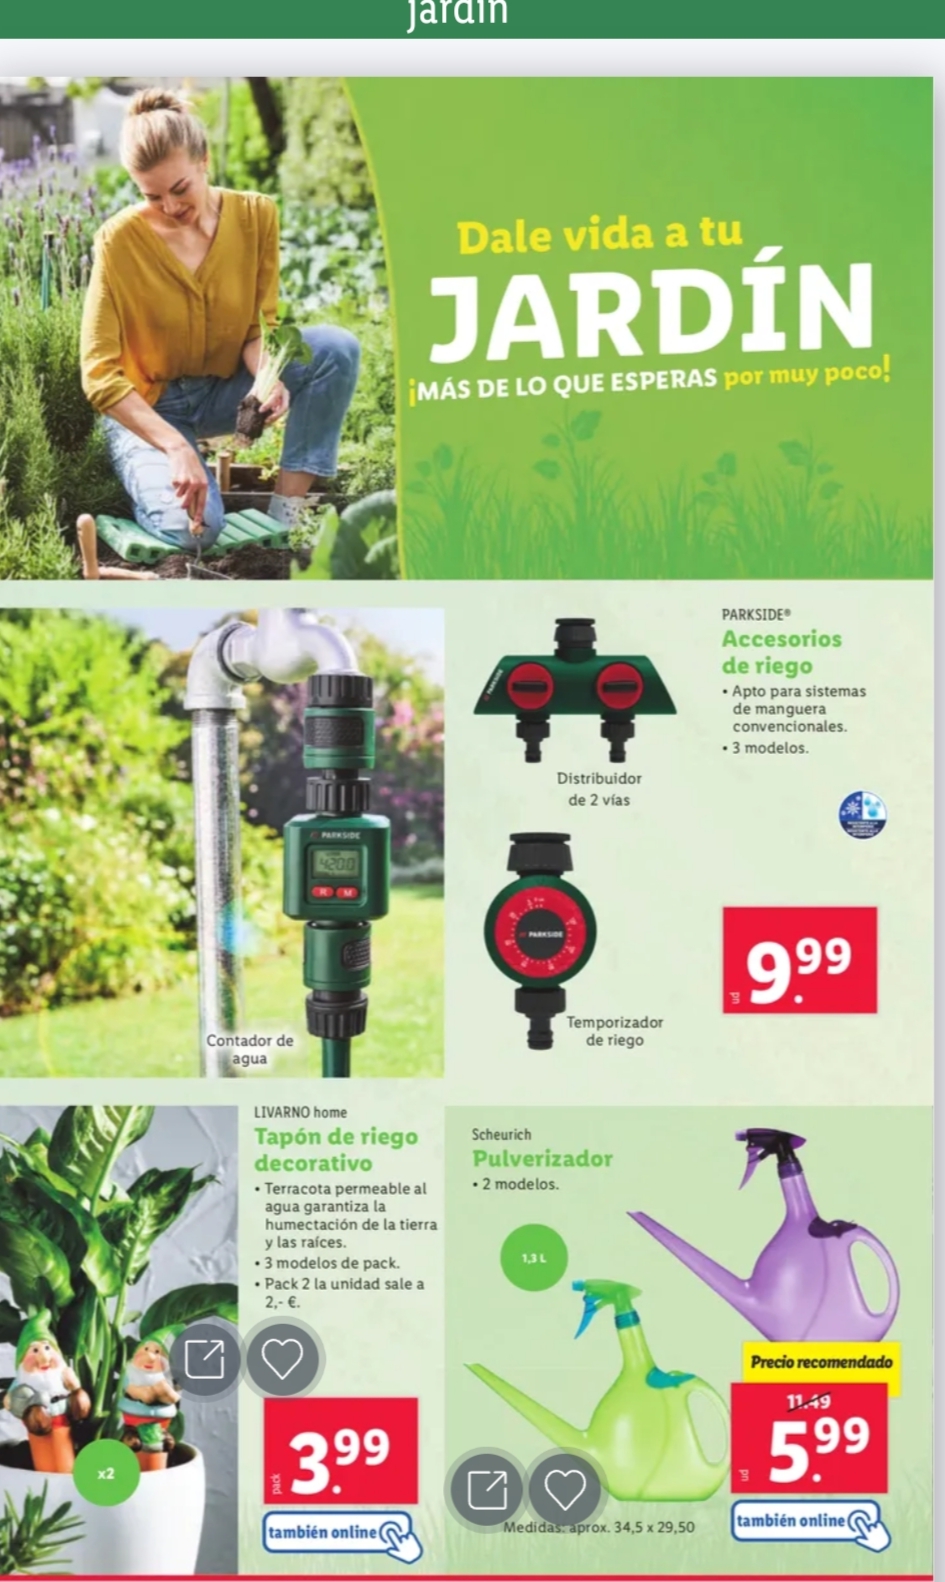 Ofertas semanales de jardinería en ALDI y LIDL - Página 19 Img_2052